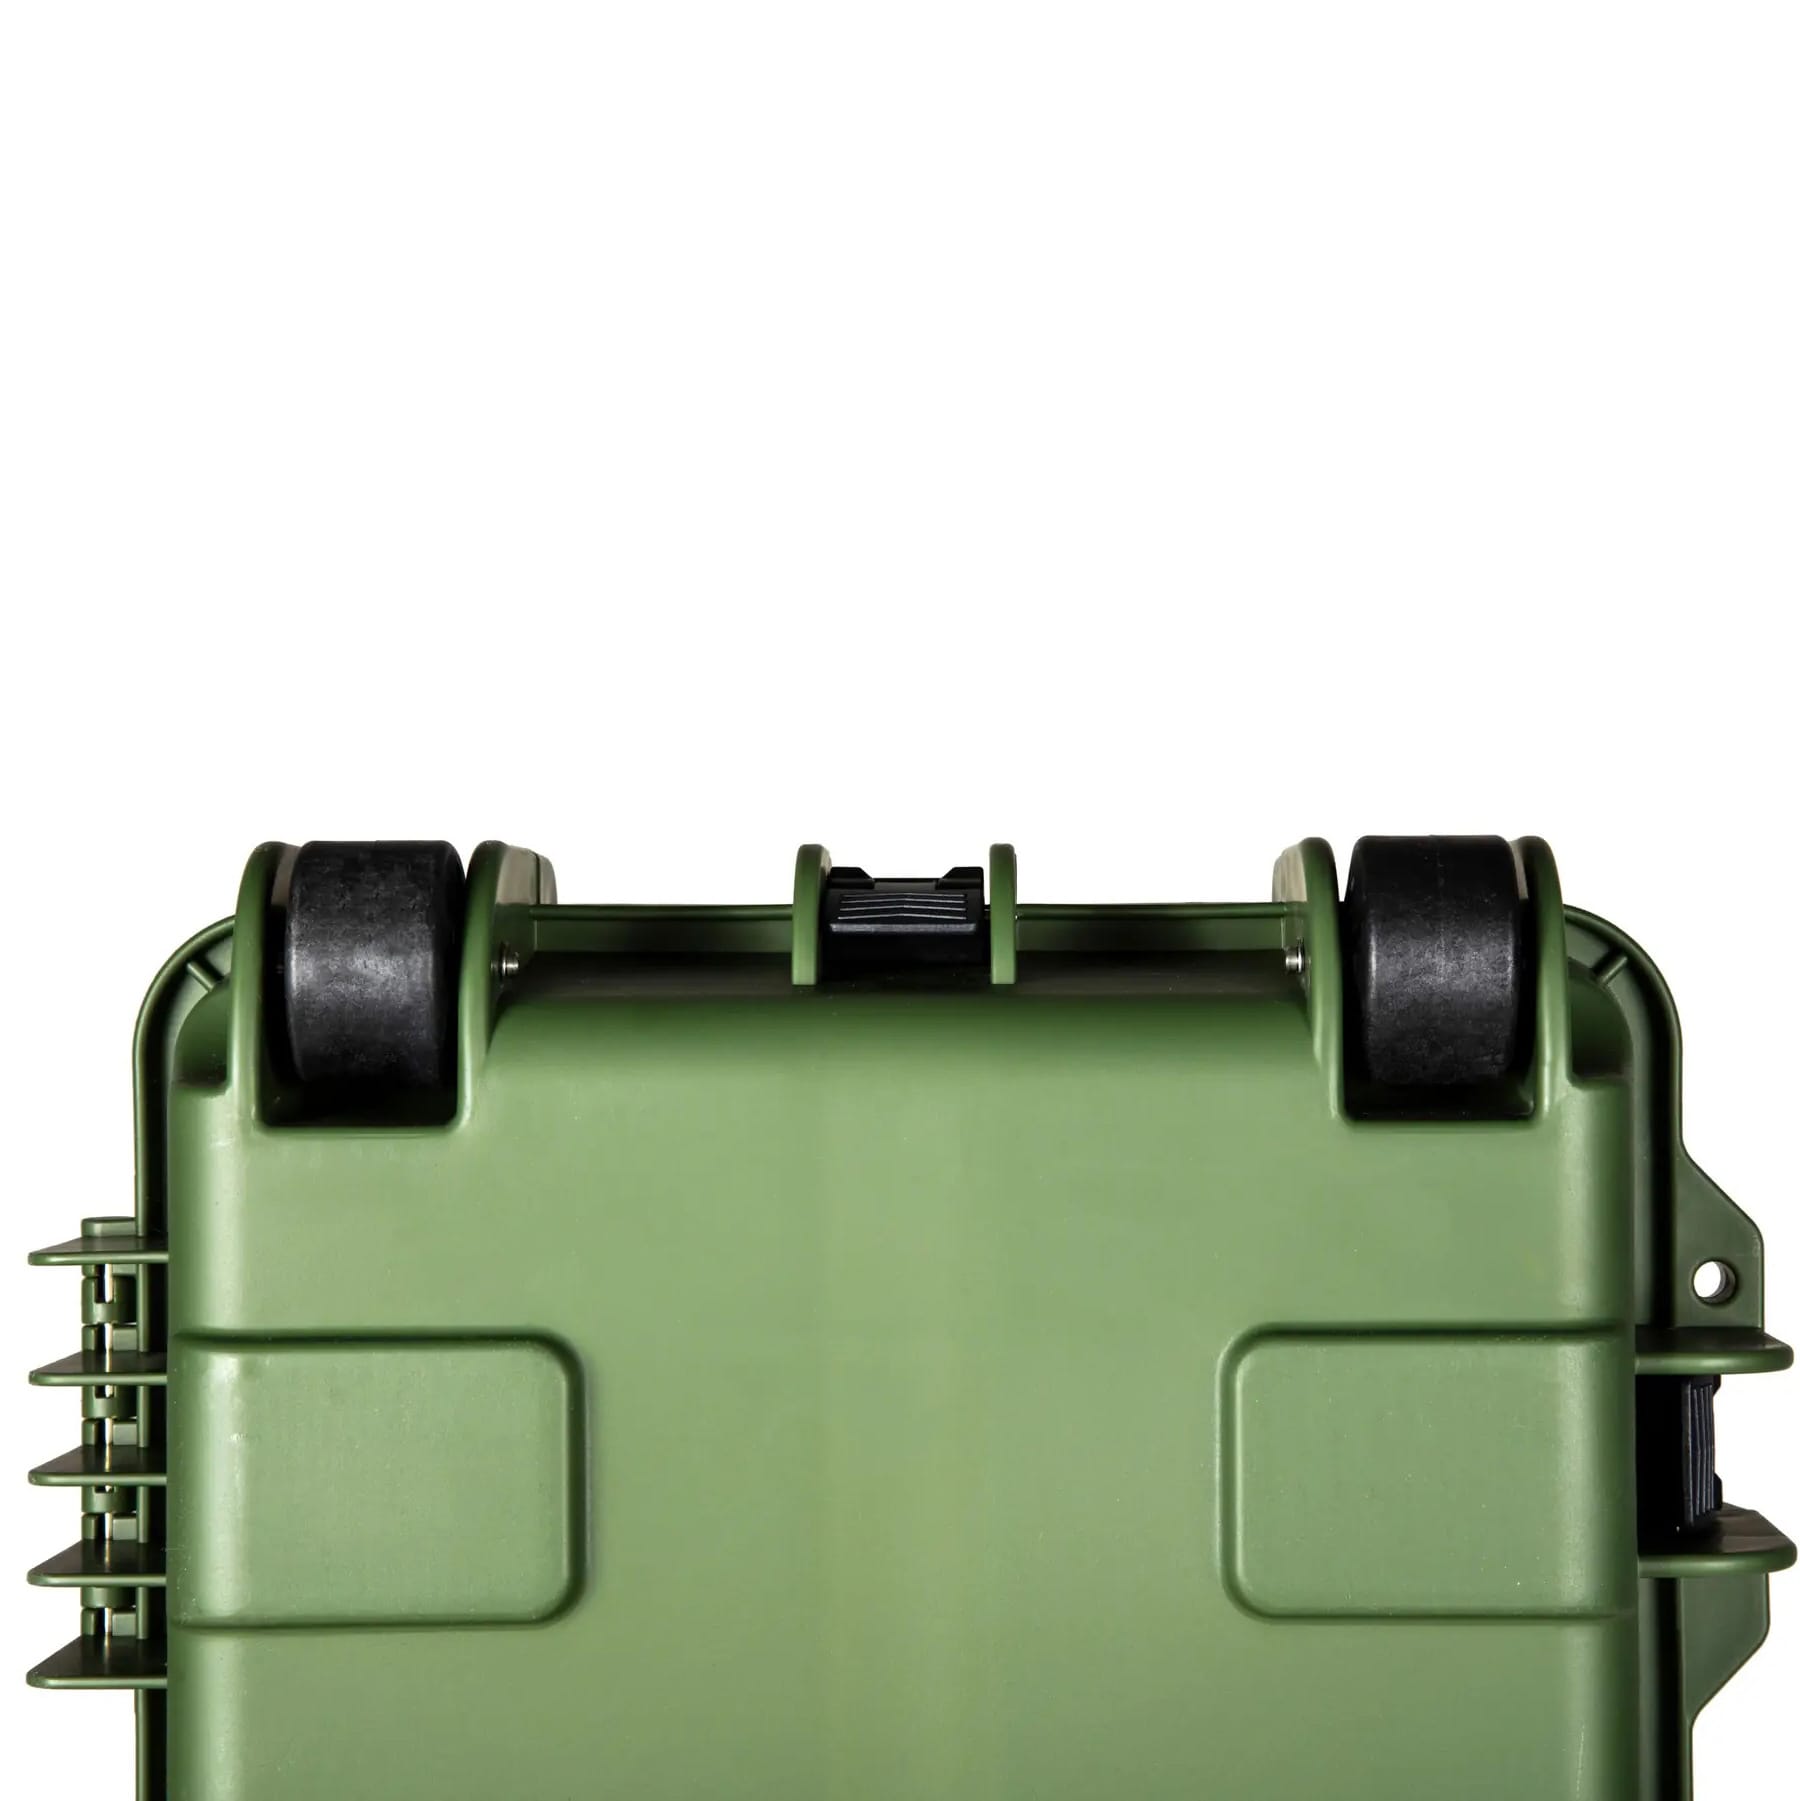 Кейс для транспортування Nuprol XL Hard Case 137 см (Wave) - Зелений